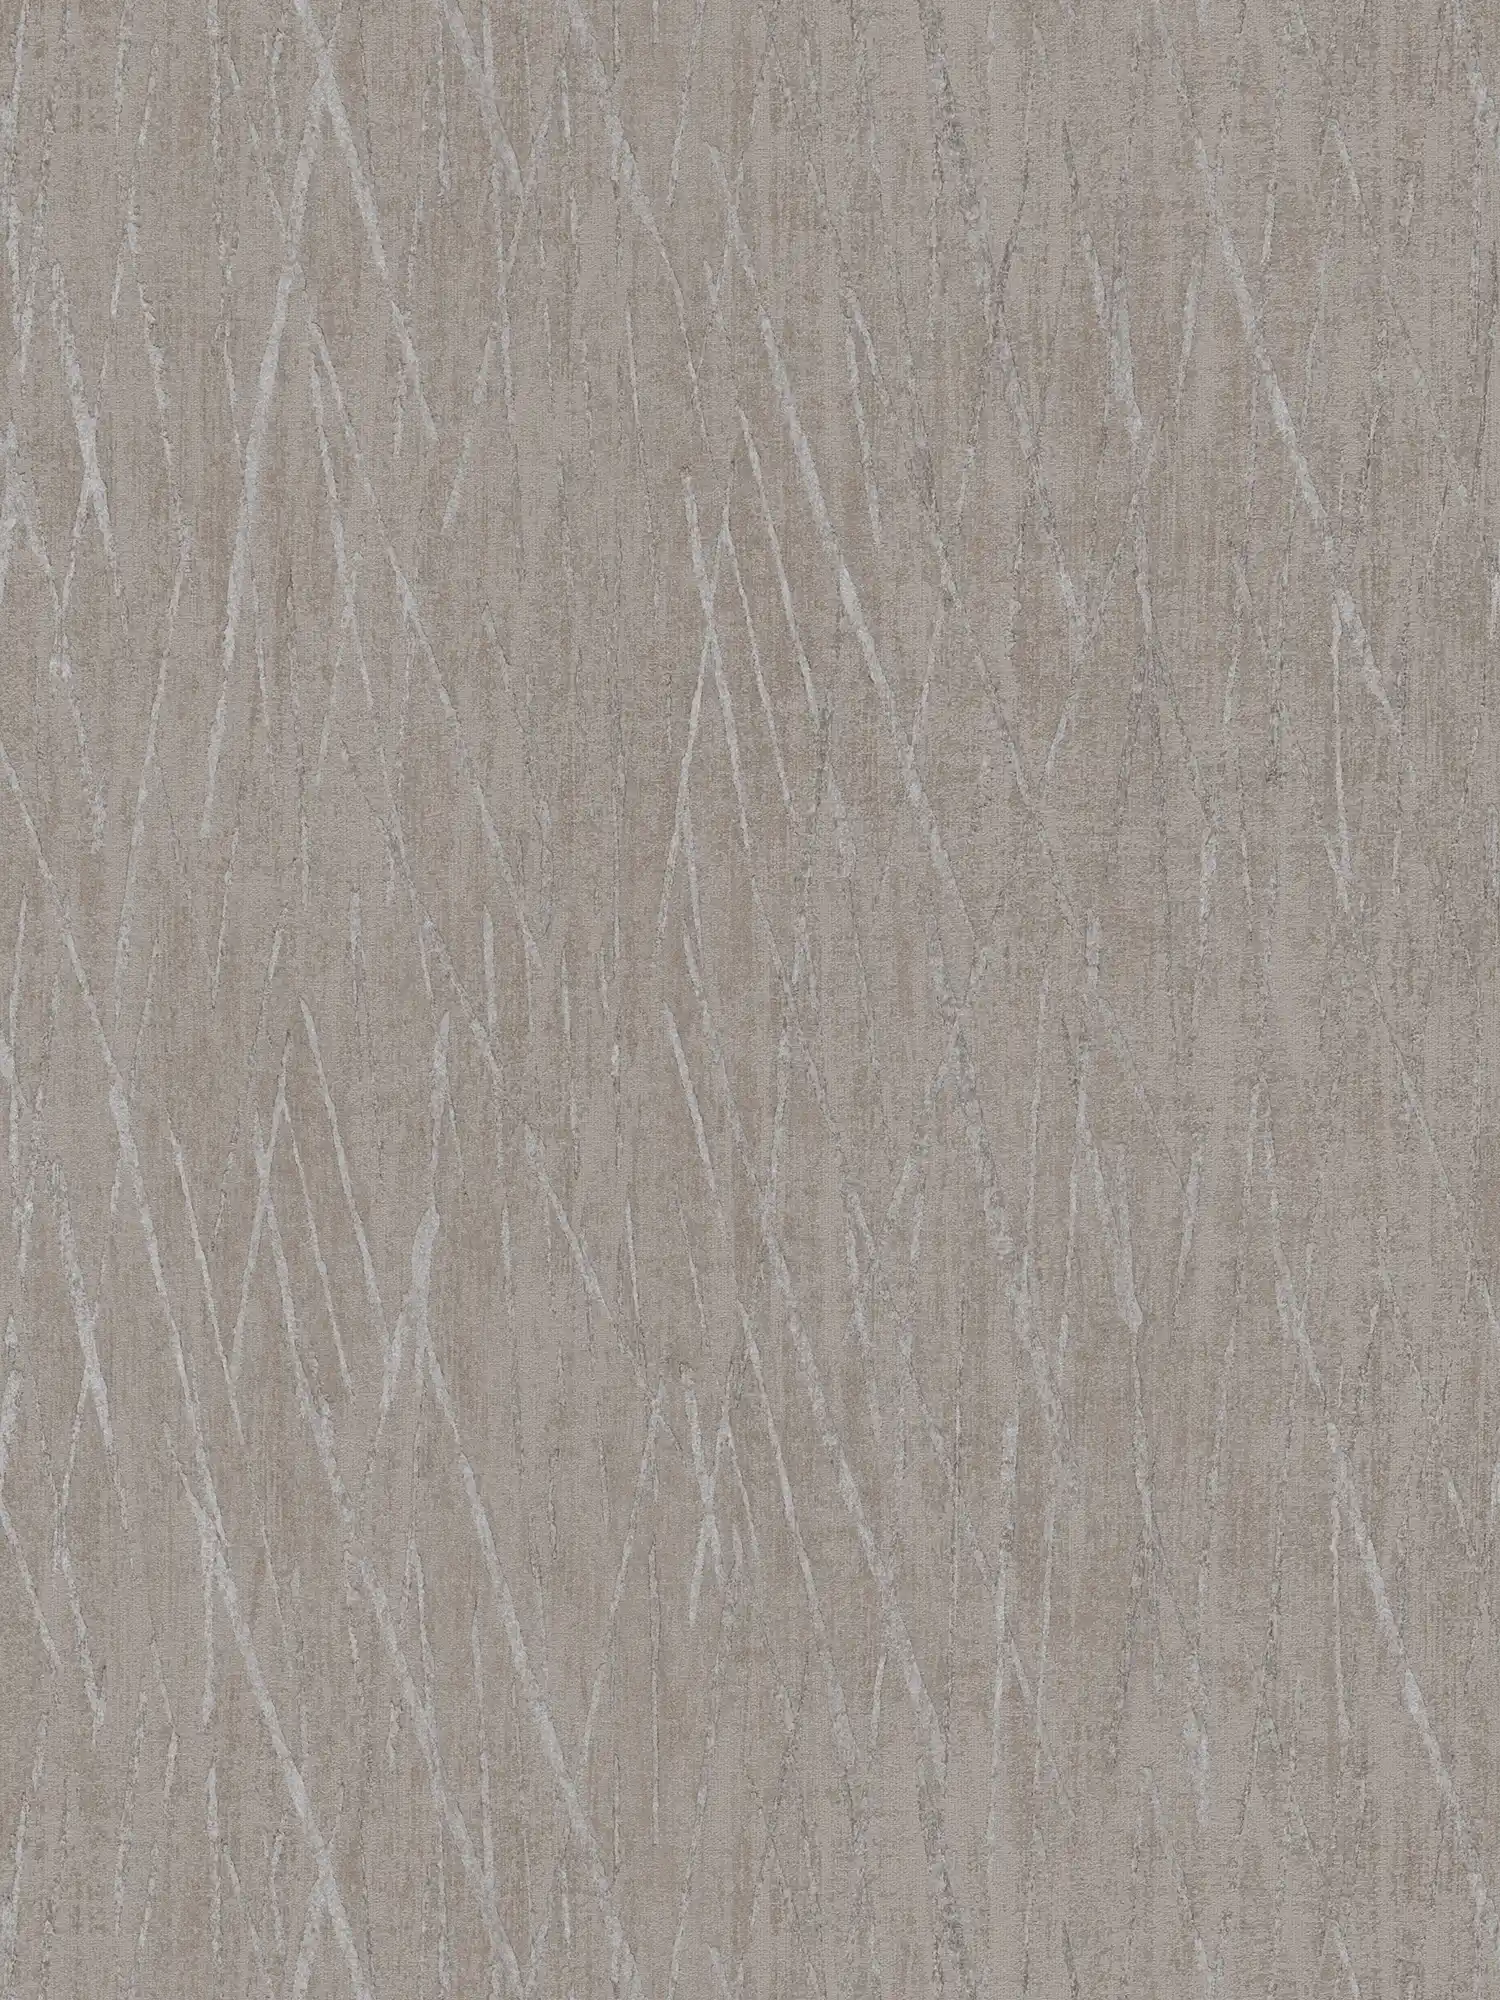 Papier peint scandinave au design métallique - beige, gris
